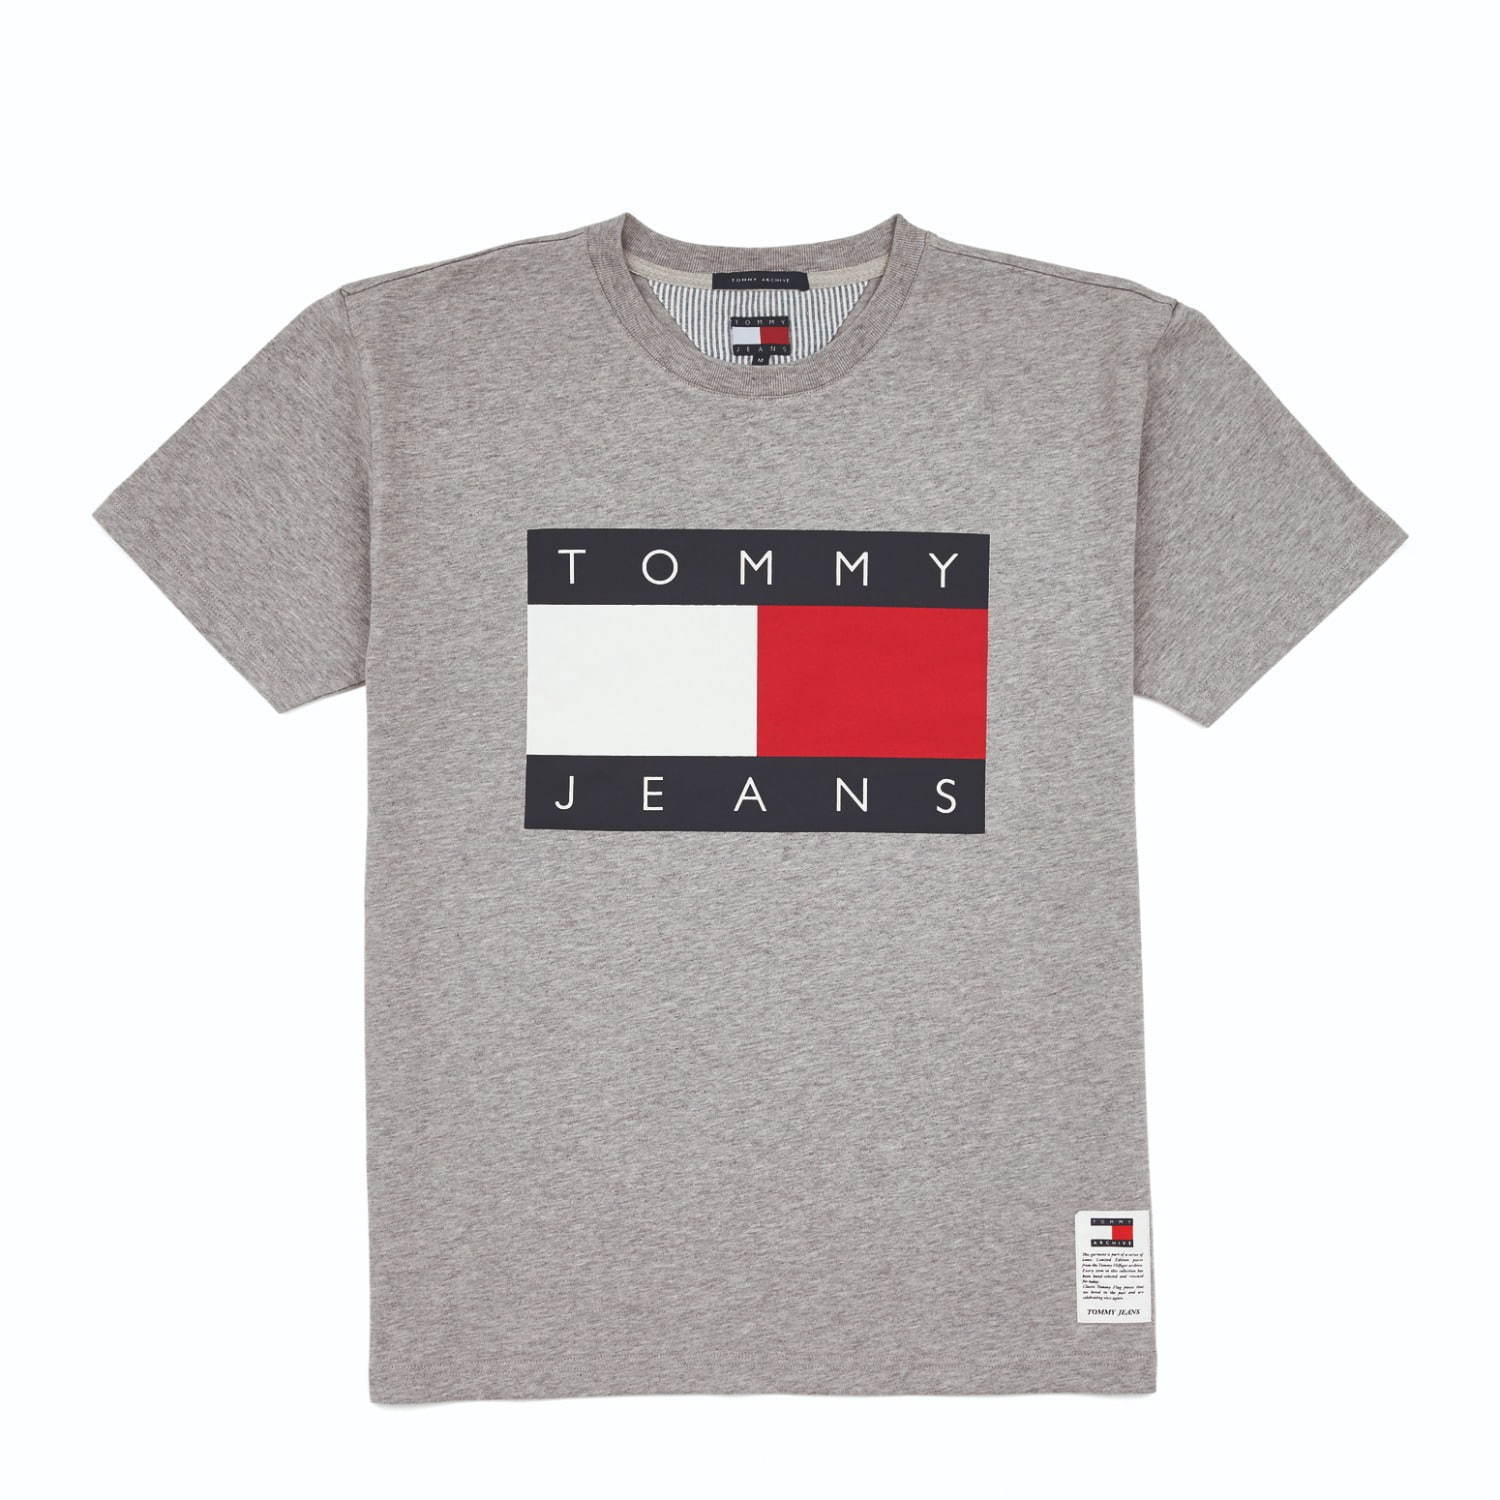 トミー ジーンズ、過去の名作Tシャツやスウェットを復刻 - アイコニックなロゴをメインに｜写真2